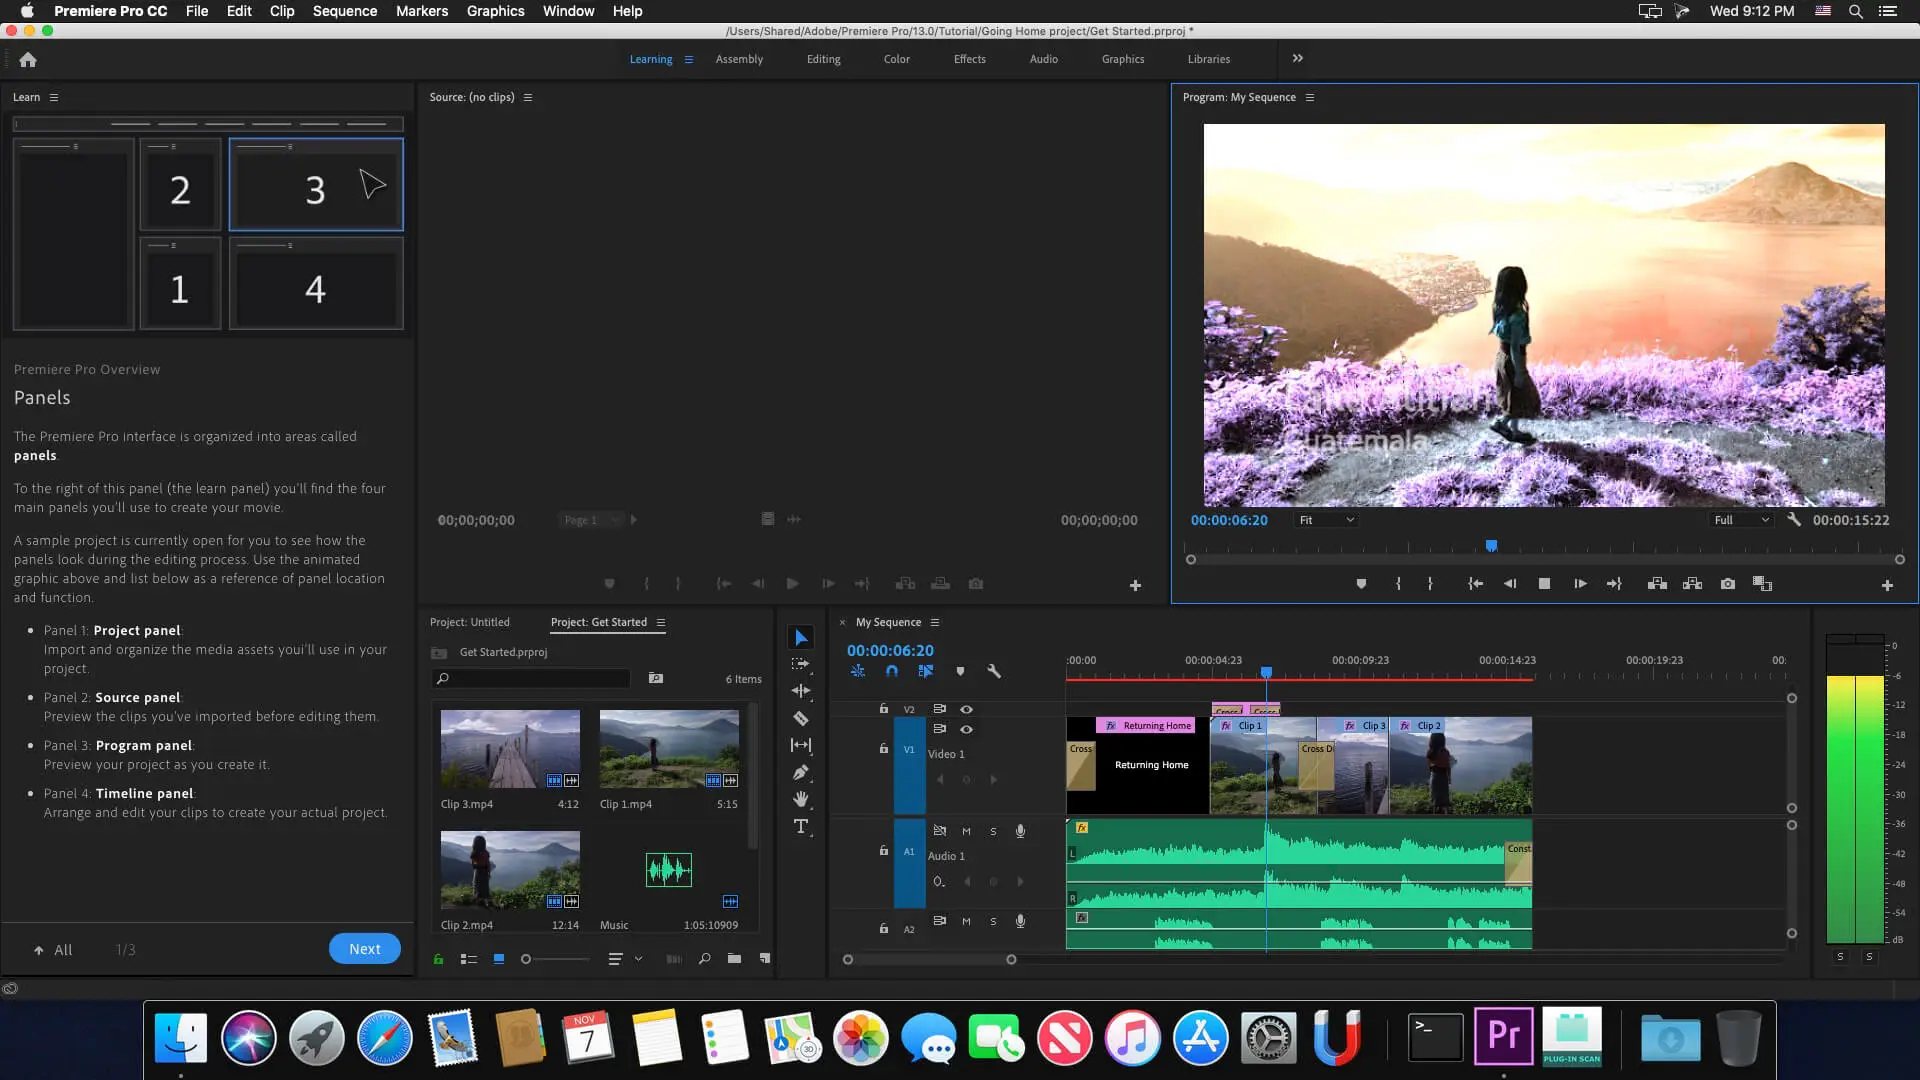 Adobe Premiere Pro Easy Video Editor Software